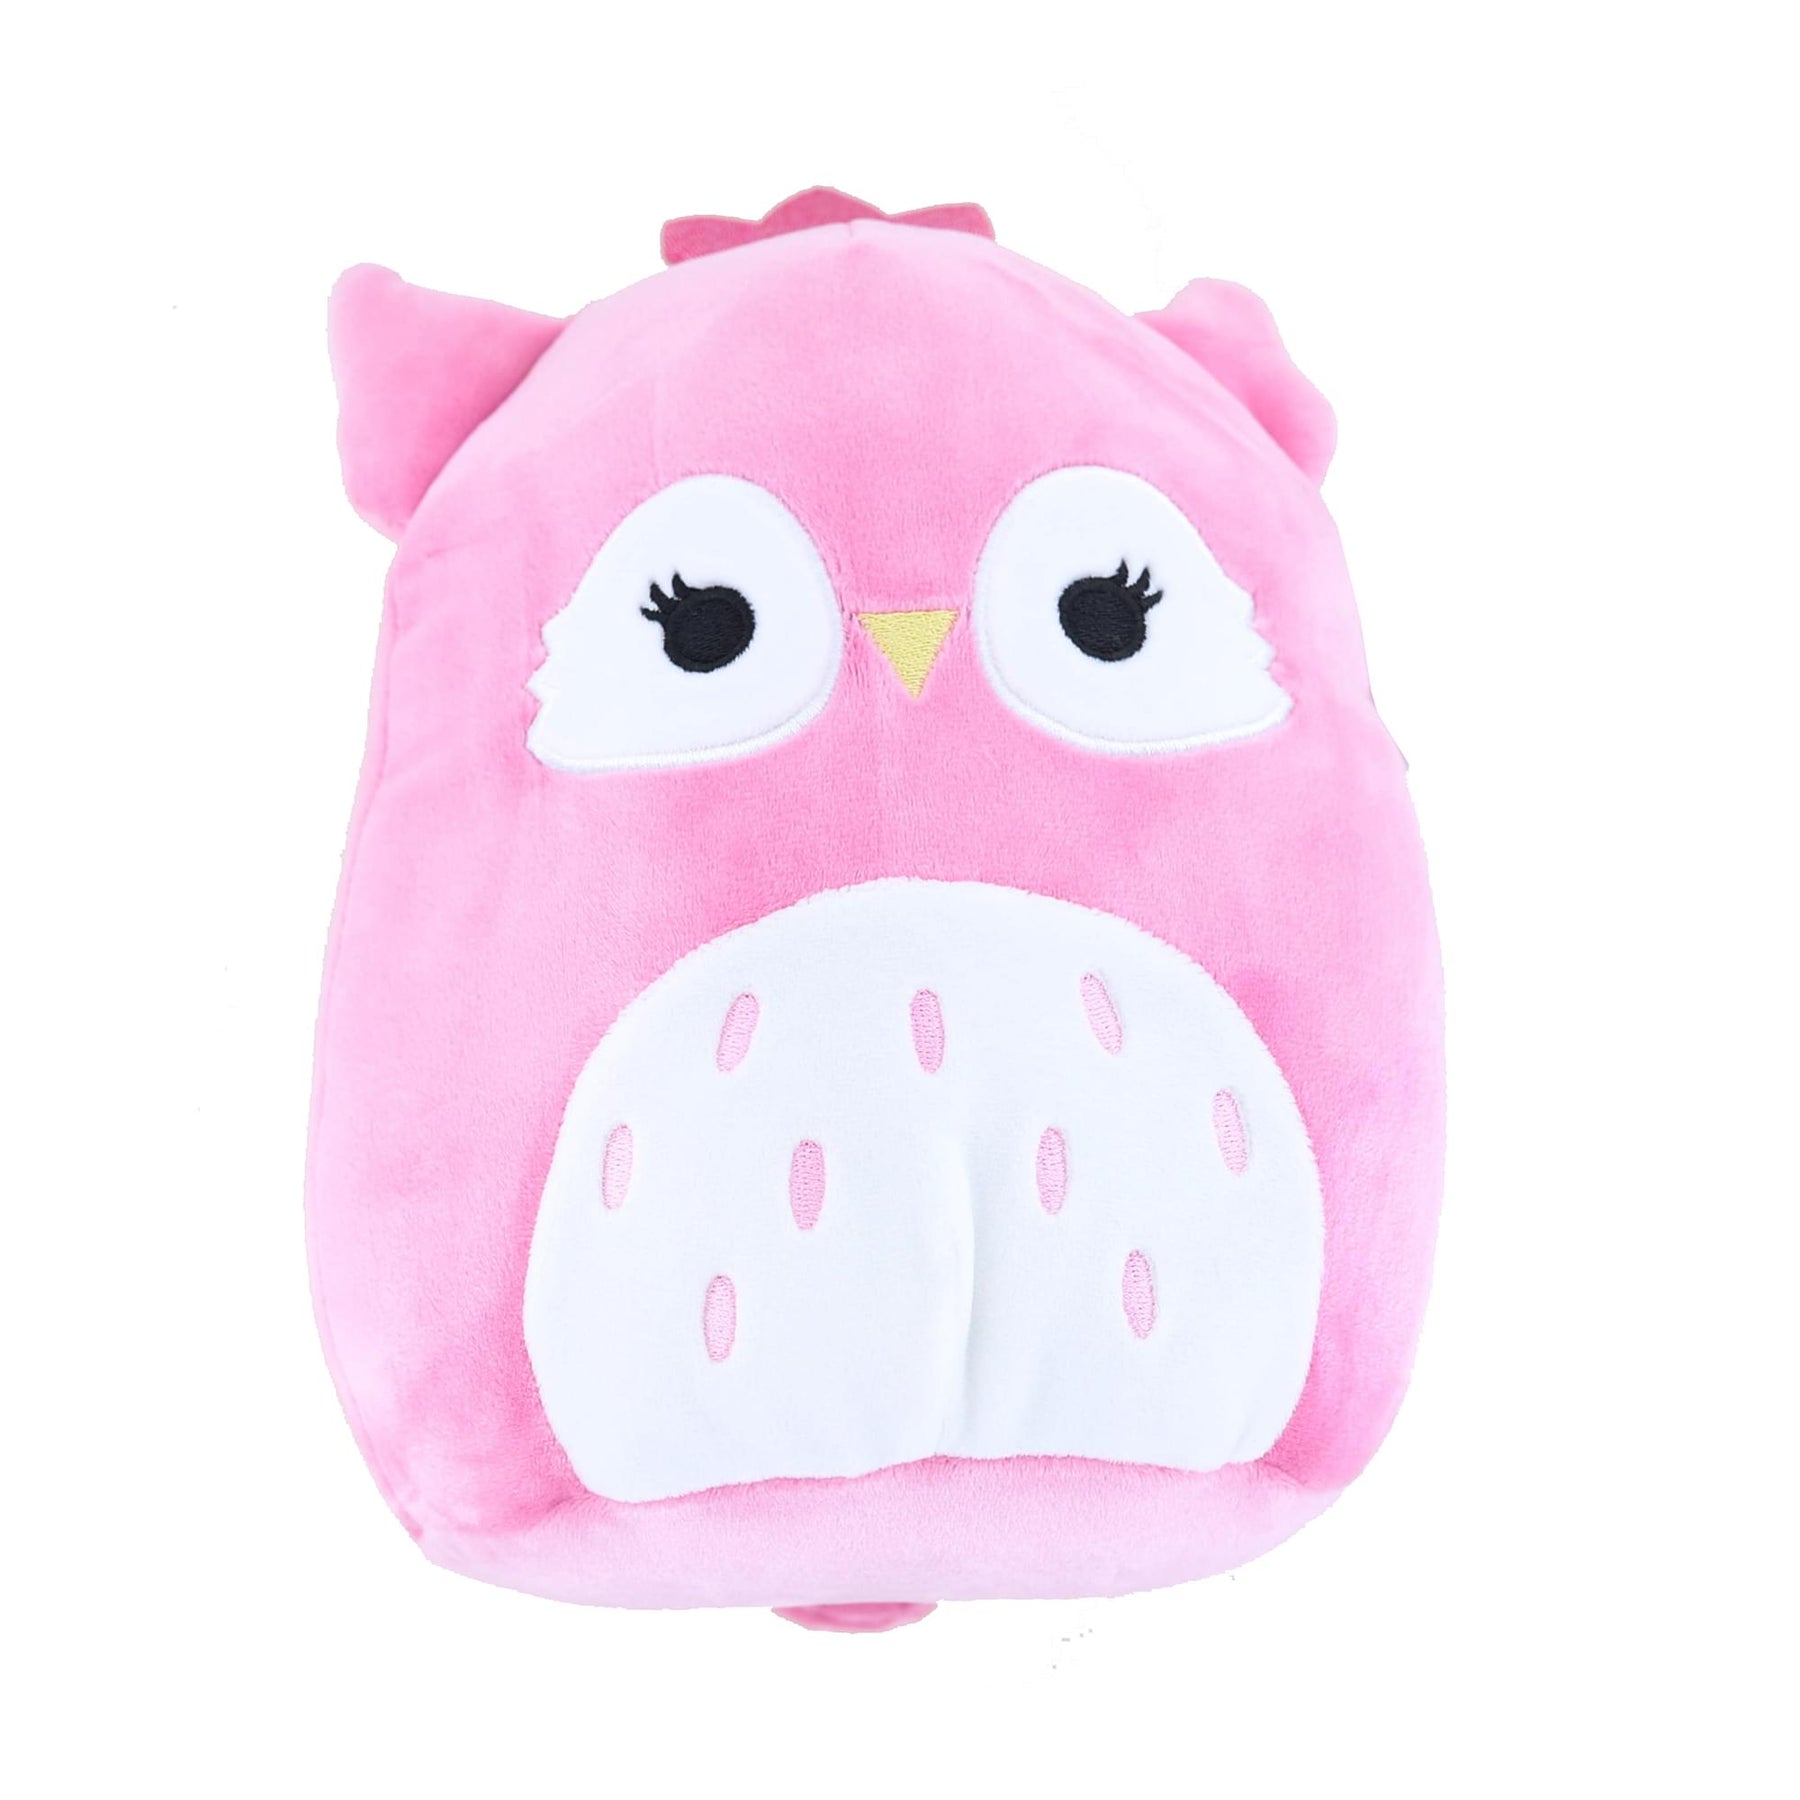 Squishmallow 8 Inch Friend Squad Plush | Bri the Pink Owl